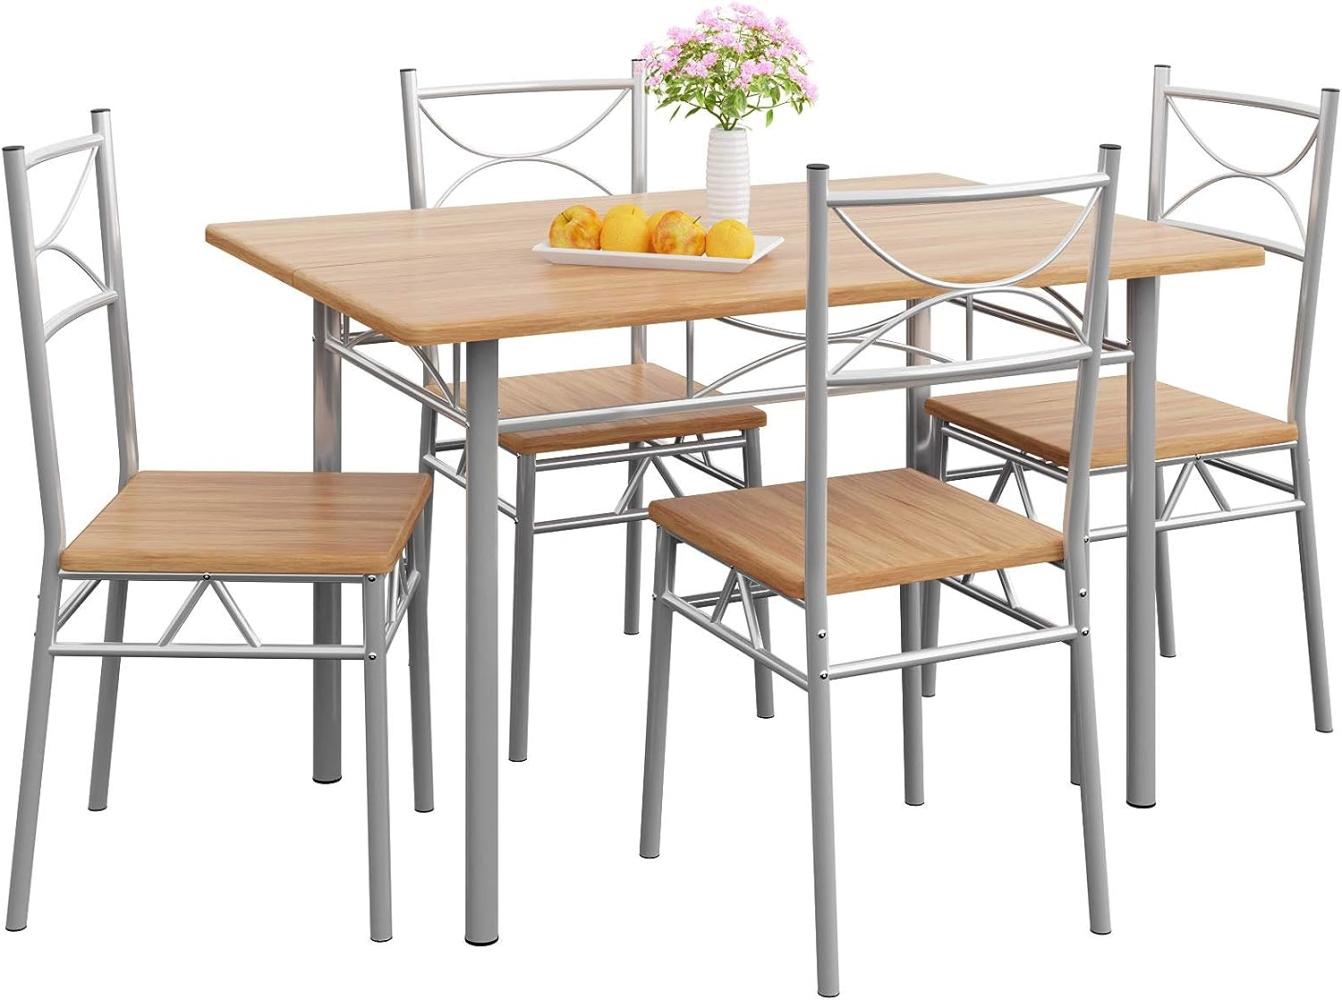 Casaria 5 TLG Sitzgruppe Paul Esstisch mit 4 Stühlen Buche für Esszimmer Küche Essgruppe Küchentisch Tisch Stuhl Set Bild 1